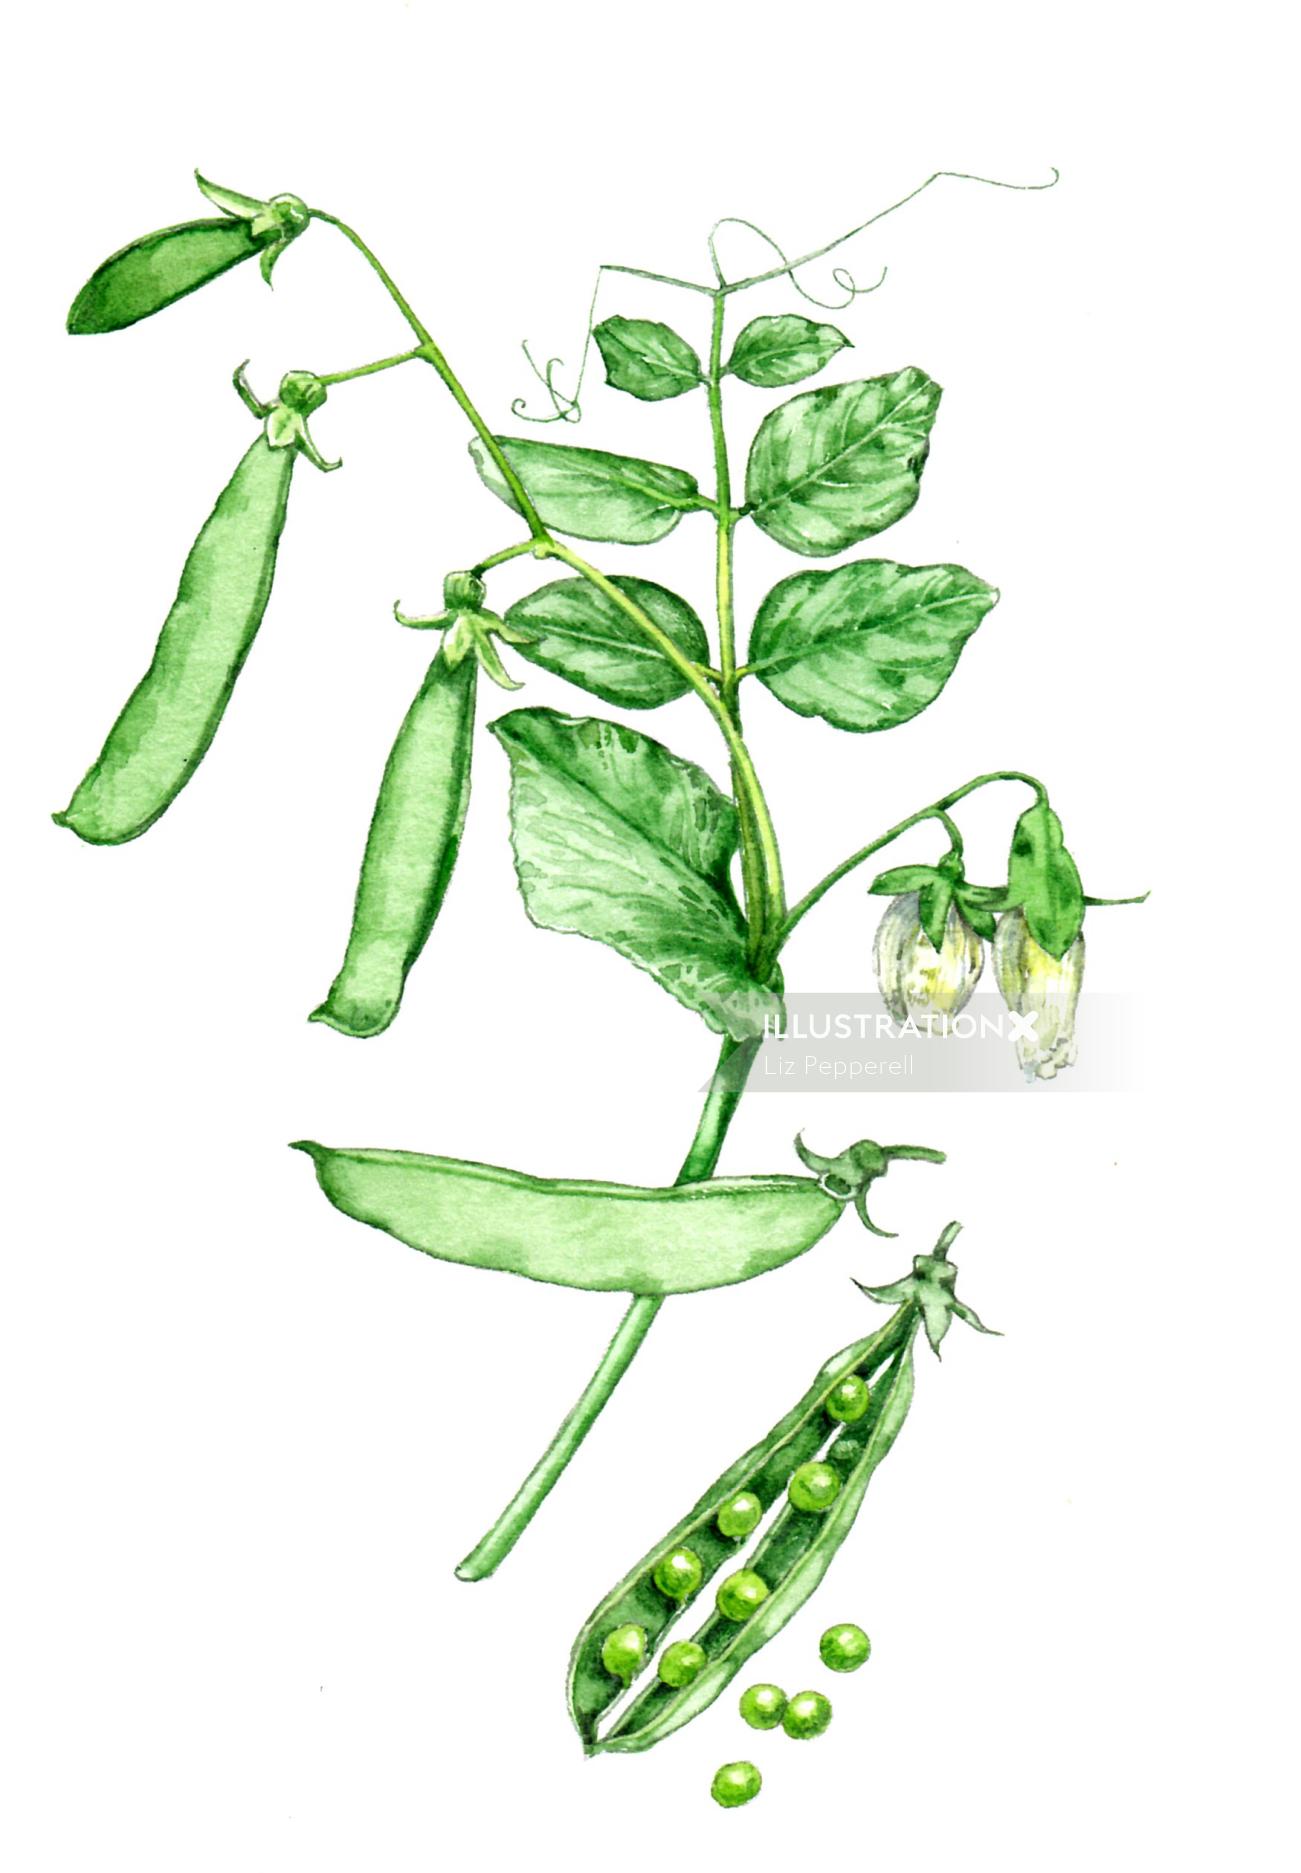 Food illustration of Snap pea